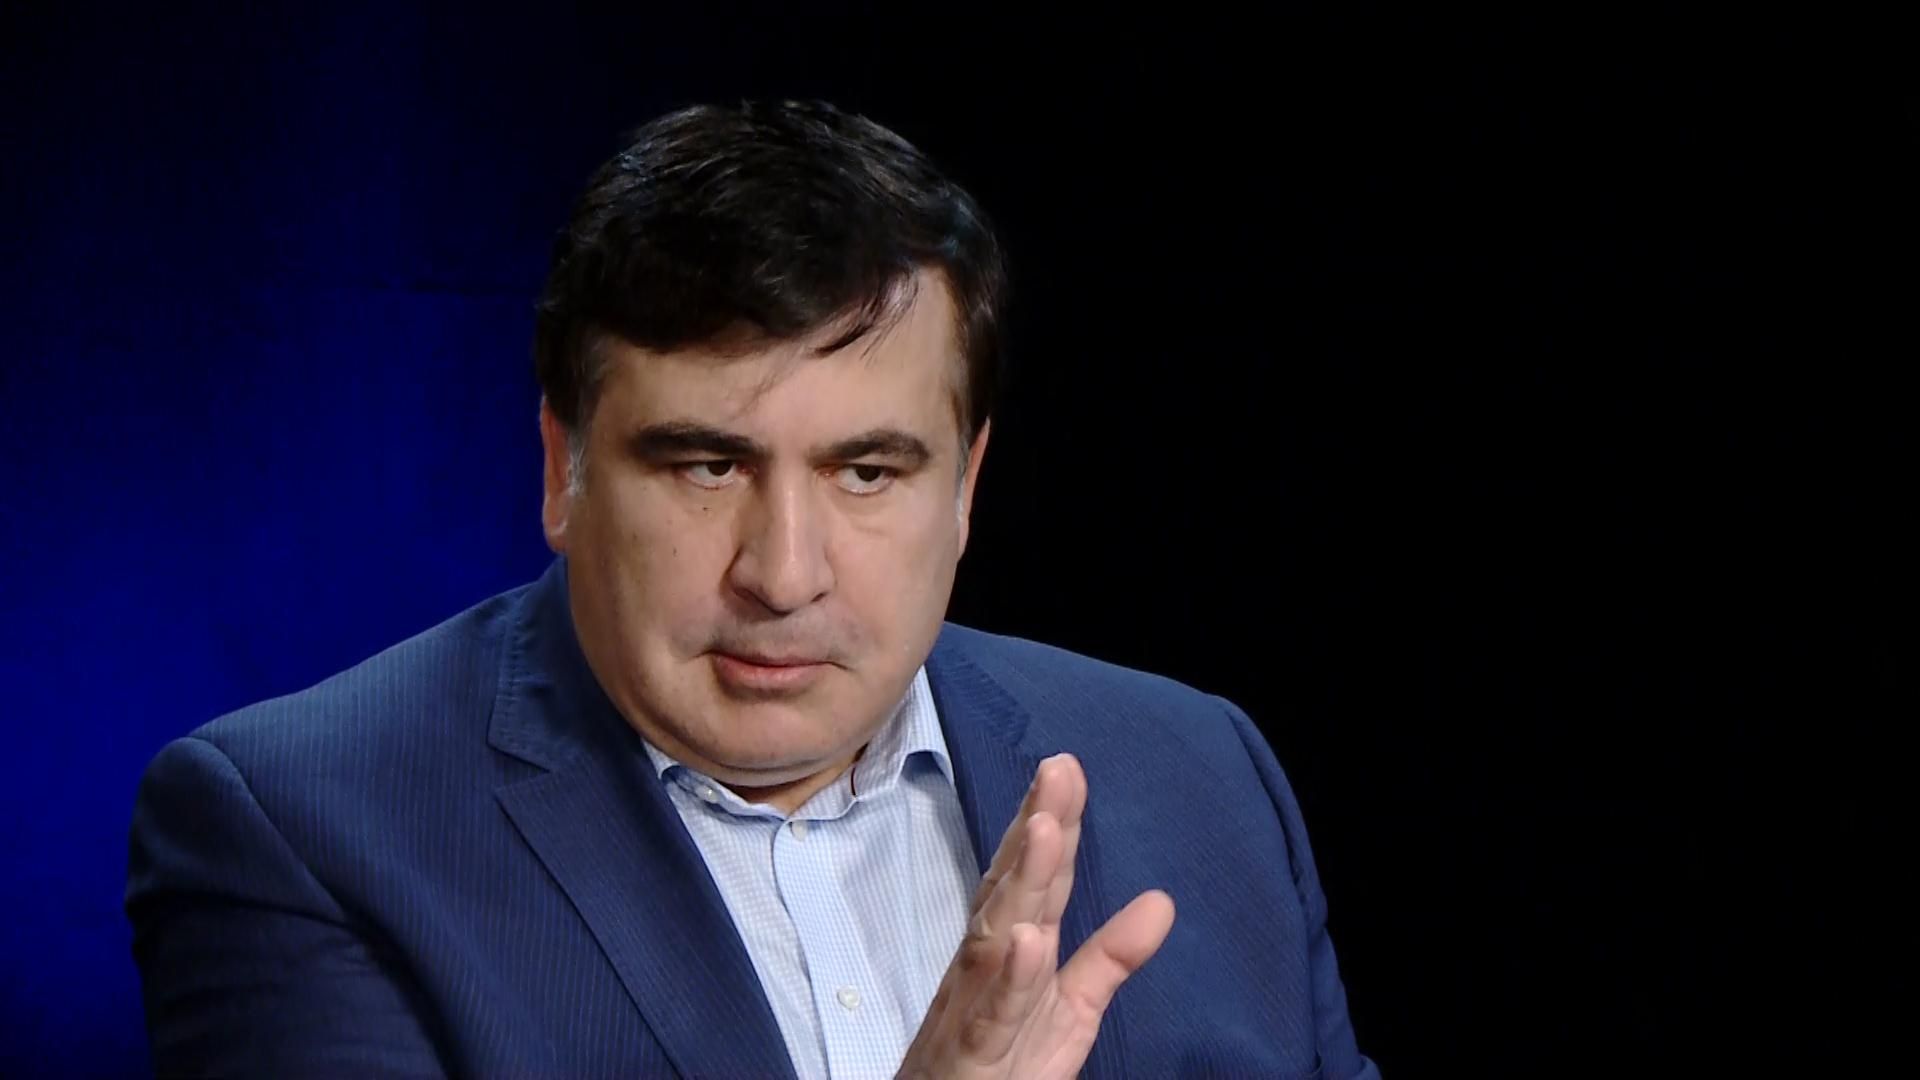 Приезд Саакашвили – несимметричный ответ Зеленского Порошенко, – эксперт